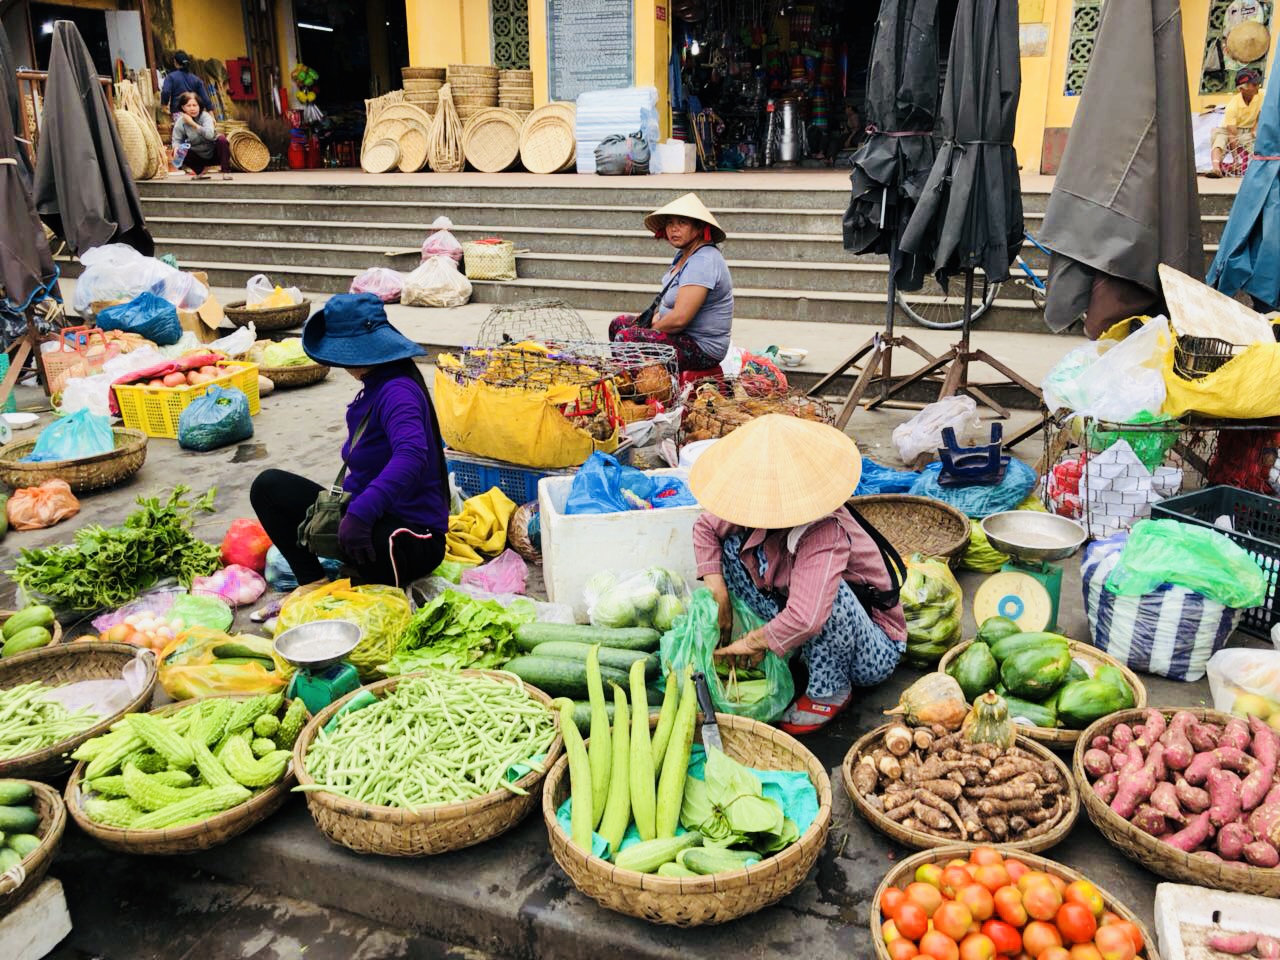 Markt in Hoi An, Vietnam